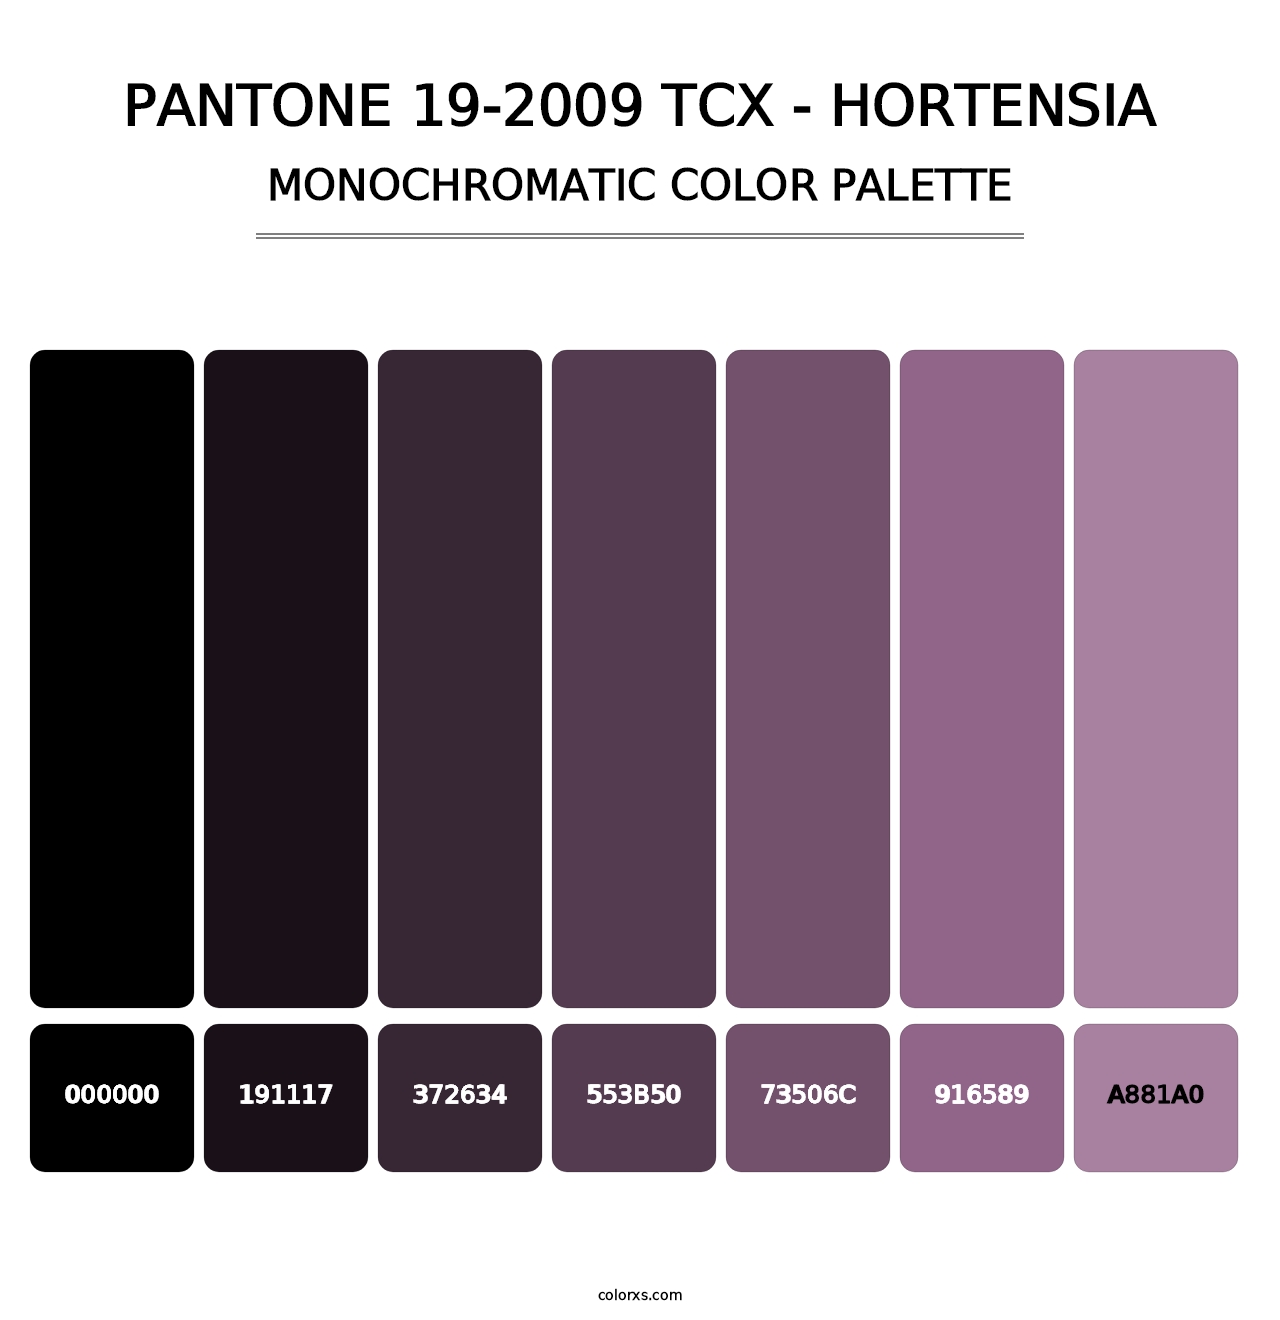 PANTONE 19-2009 TCX - Hortensia - Monochromatic Color Palette